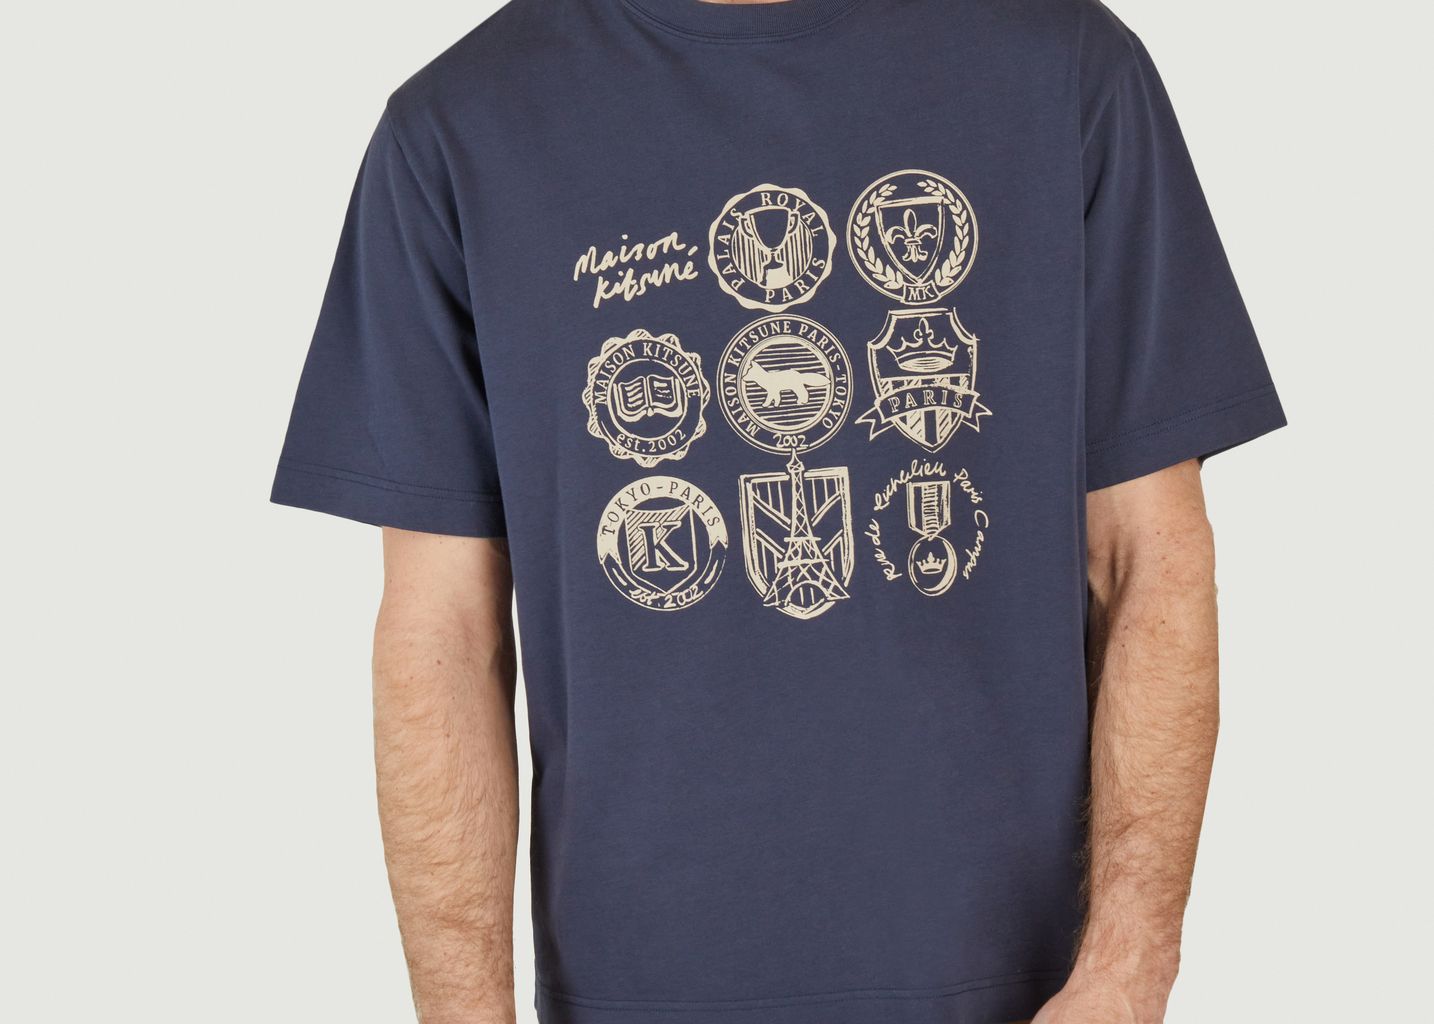 Ivy League T-Shirt - Maison Kitsuné